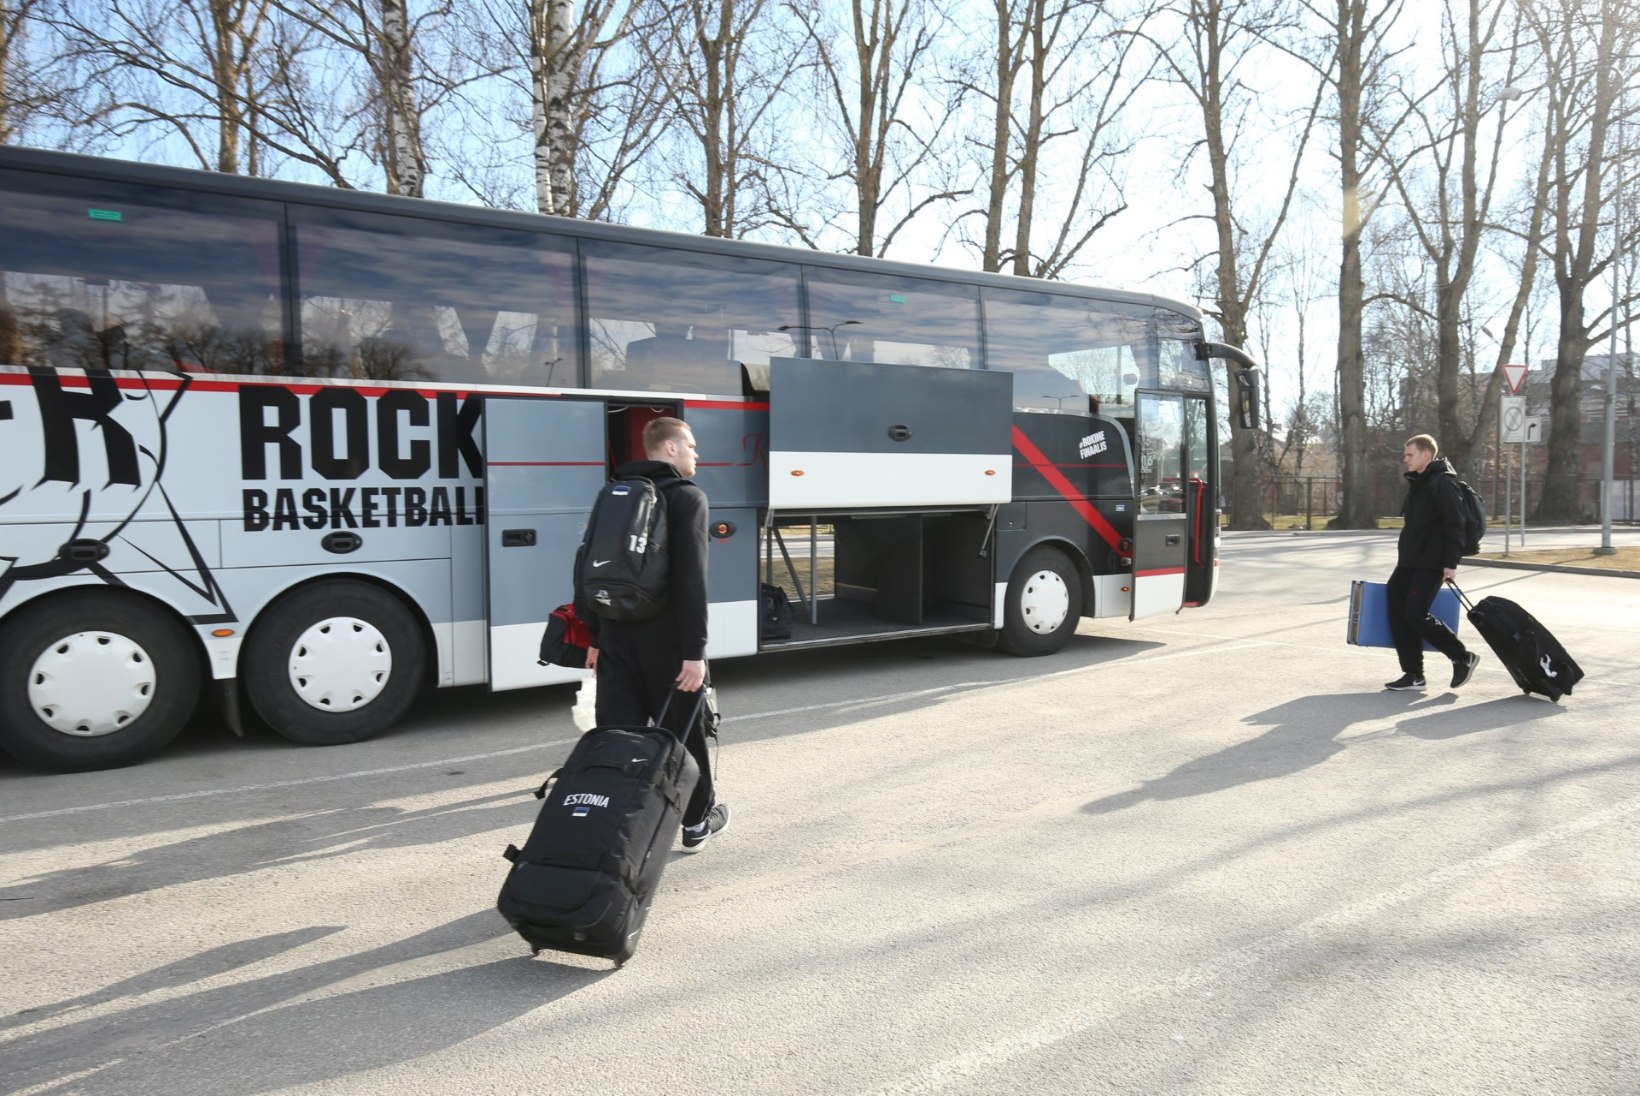 FOTOD | Kas sihtpunktis tuleb võit? TÜ/Rock alustas mugava bussiga teed otsustavale Balti liiga finaalmängule!